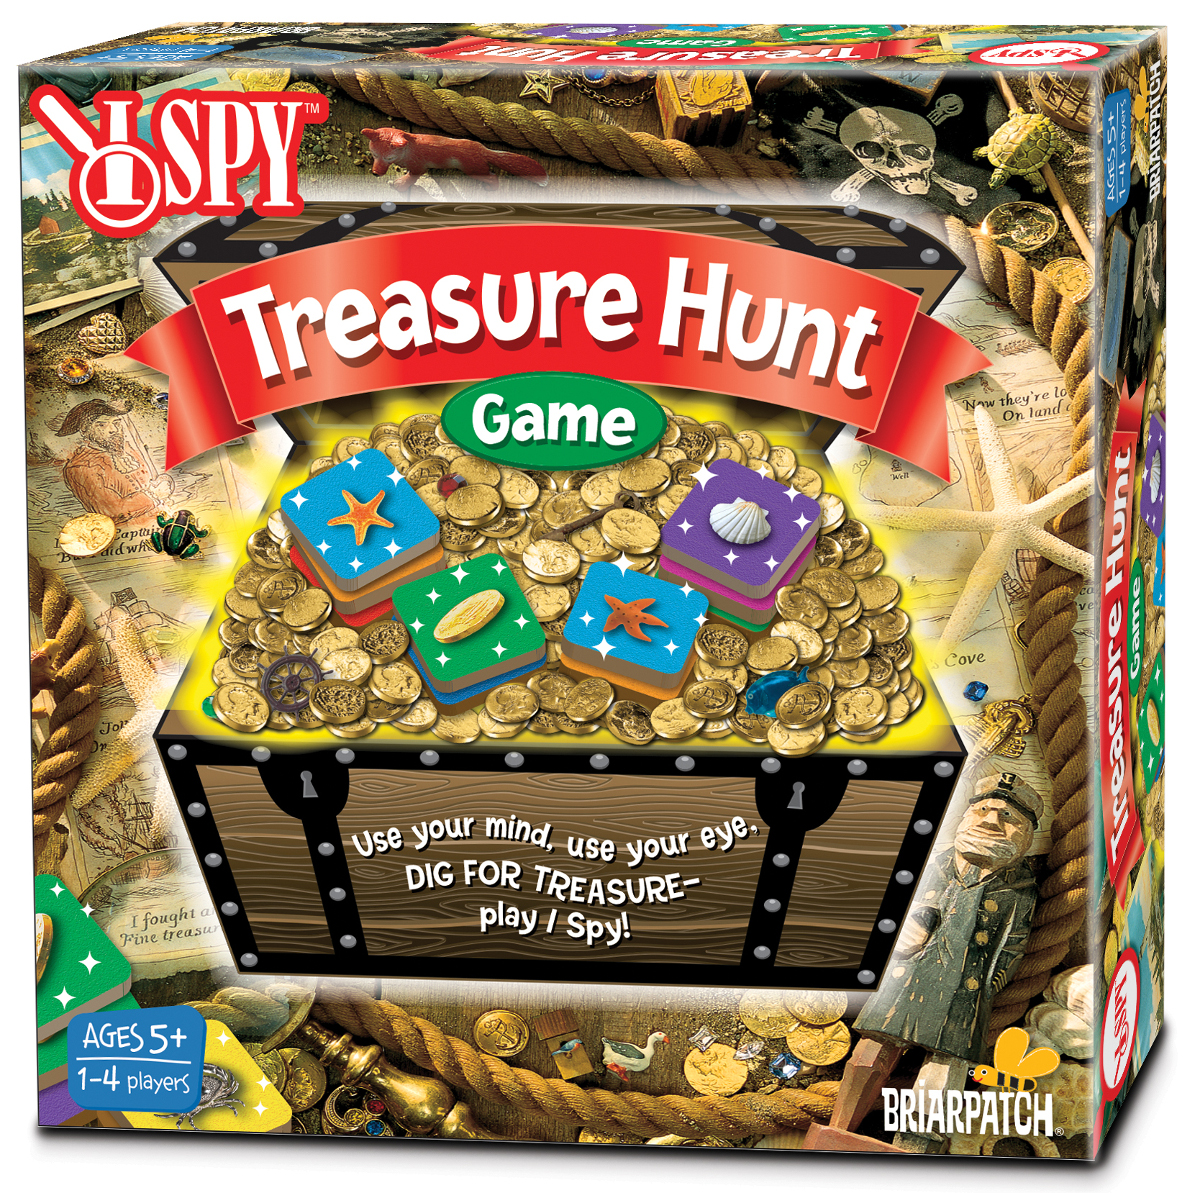 Treasure hunt 2. Игра Treasure. The Treasure Hunt. Spy Treasure Hunt. Treasure Hunt 2 игра.